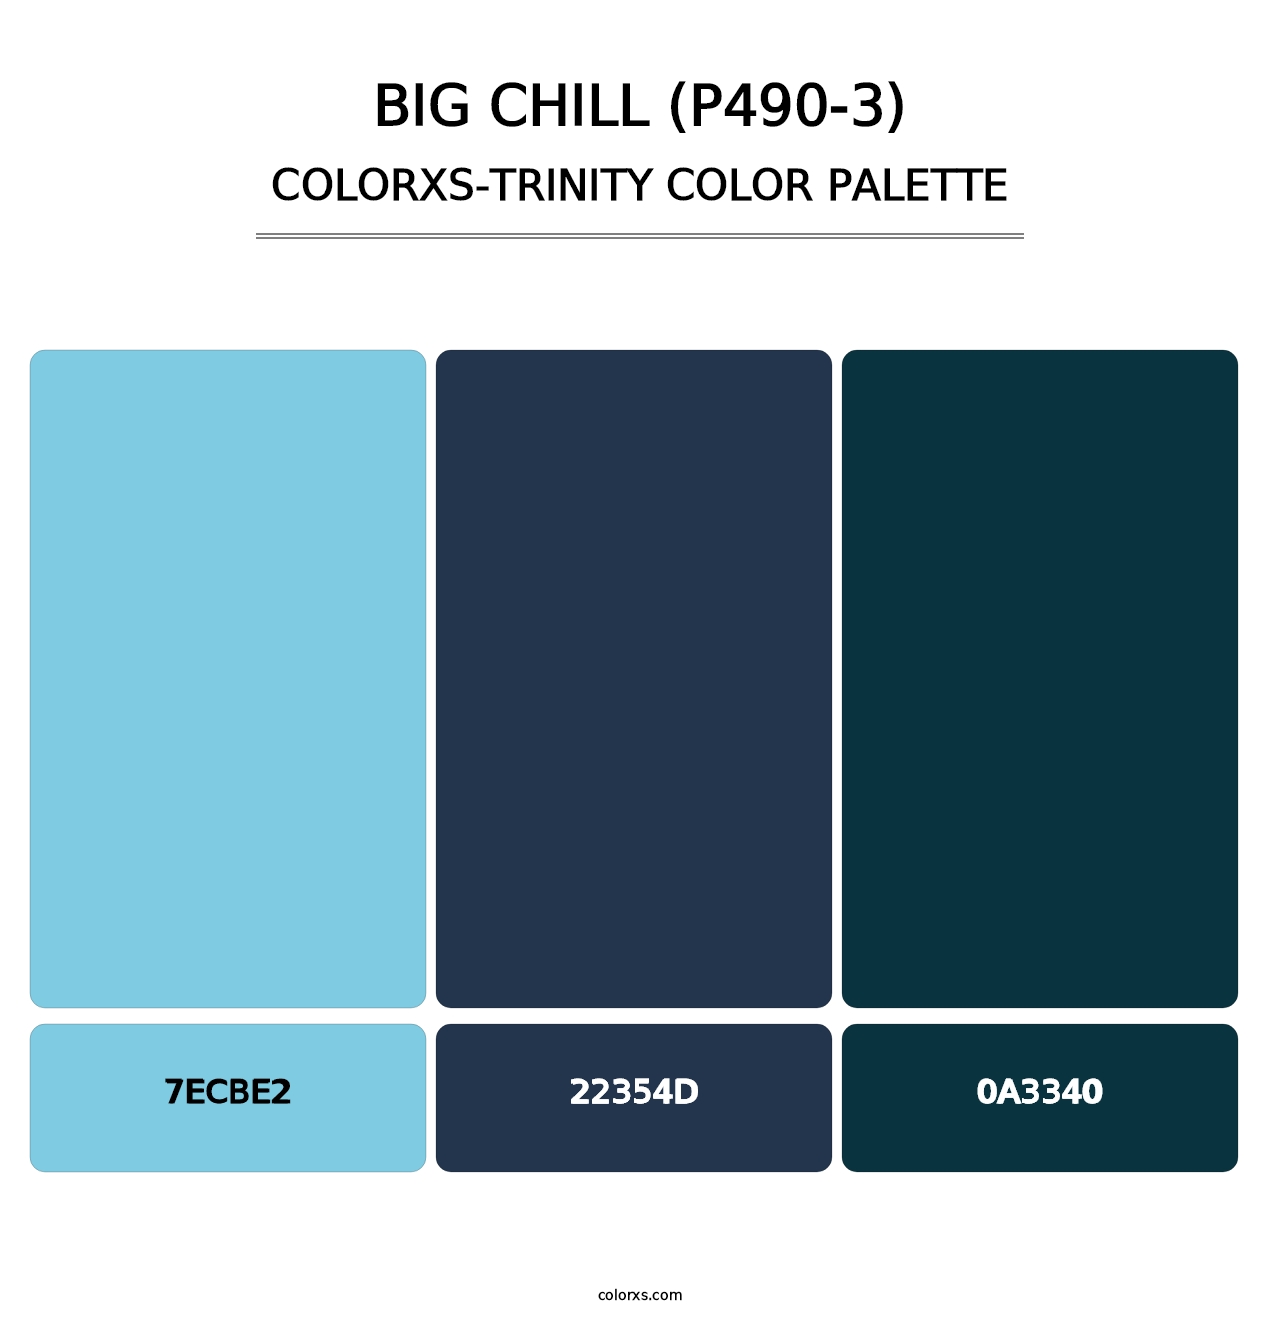 Big Chill (P490-3) - Colorxs Trinity Palette